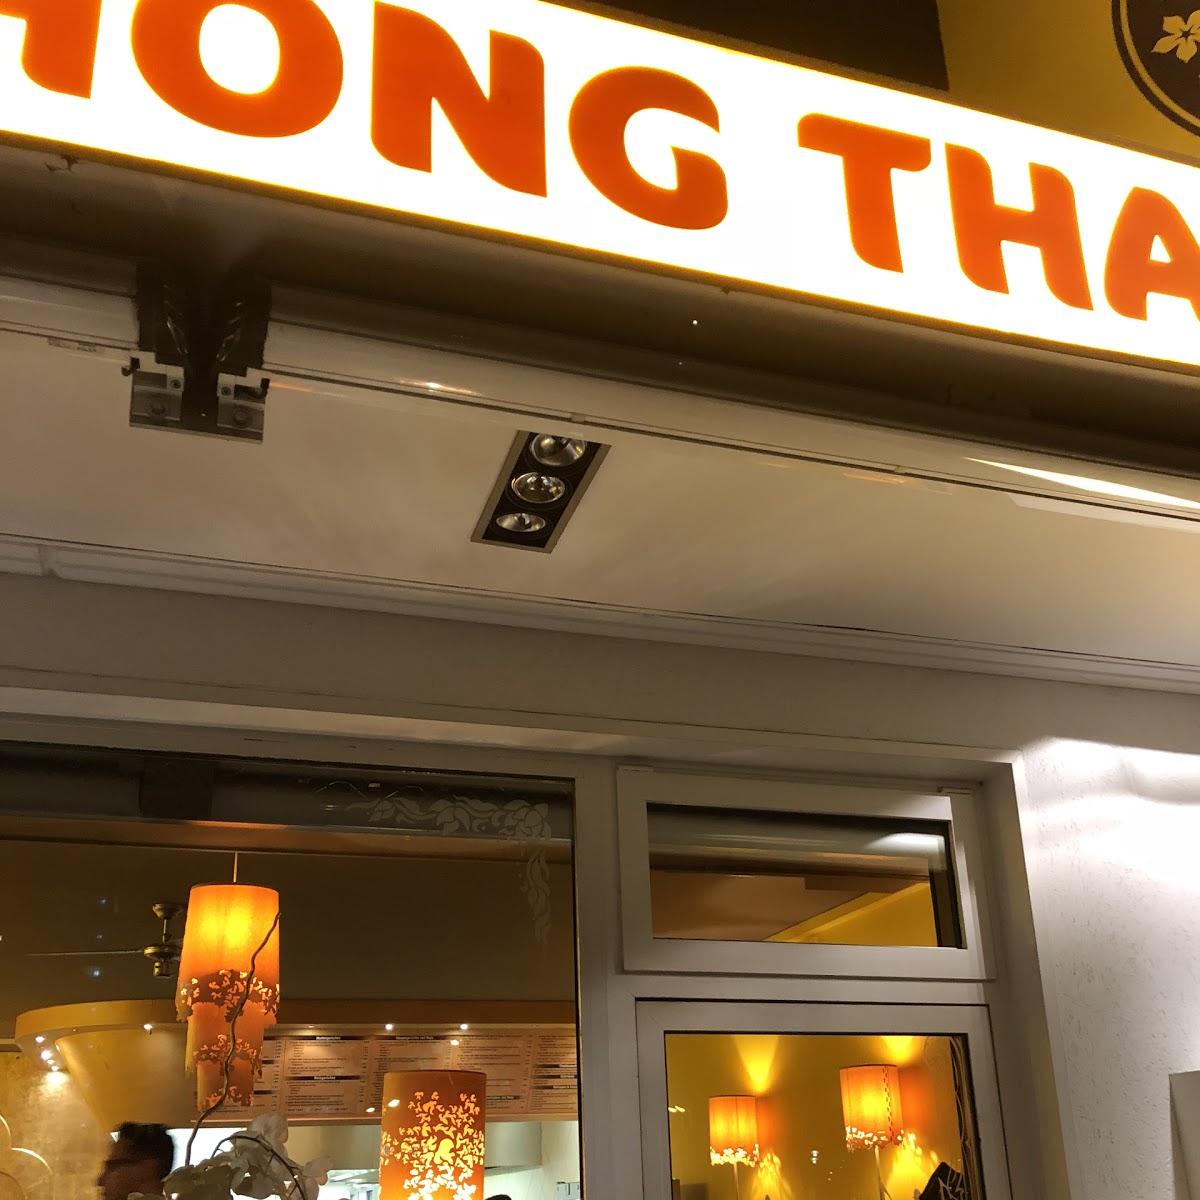 Restaurant "Thong Thai" in Eschborn